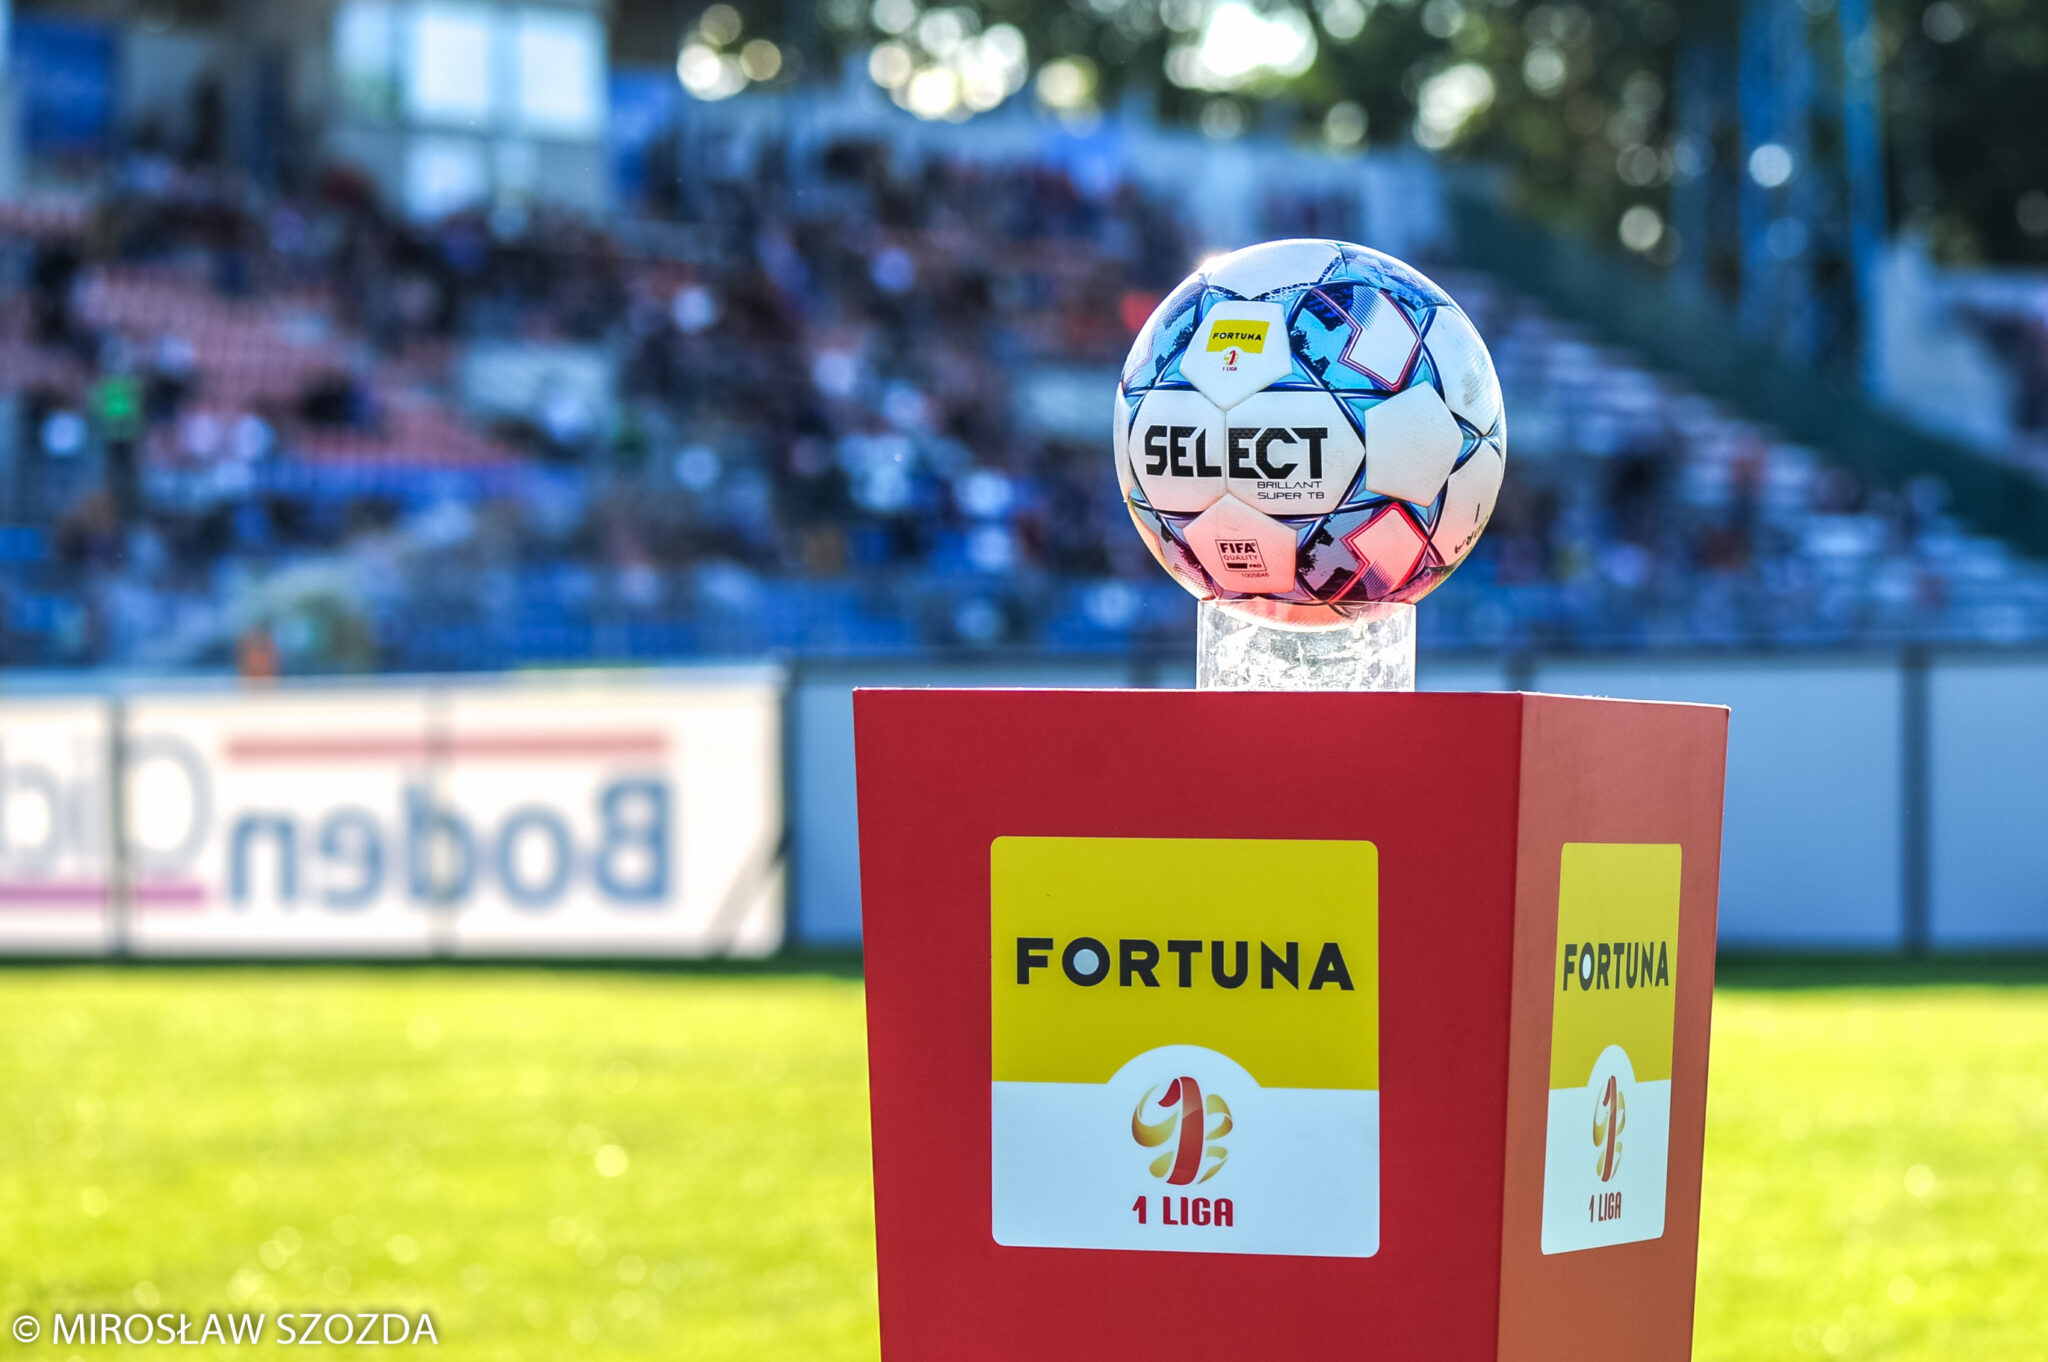 128 mln zł to kolejny rekordowy wynik przychodów klubów piłkarskiej Fortuna 1 Ligi